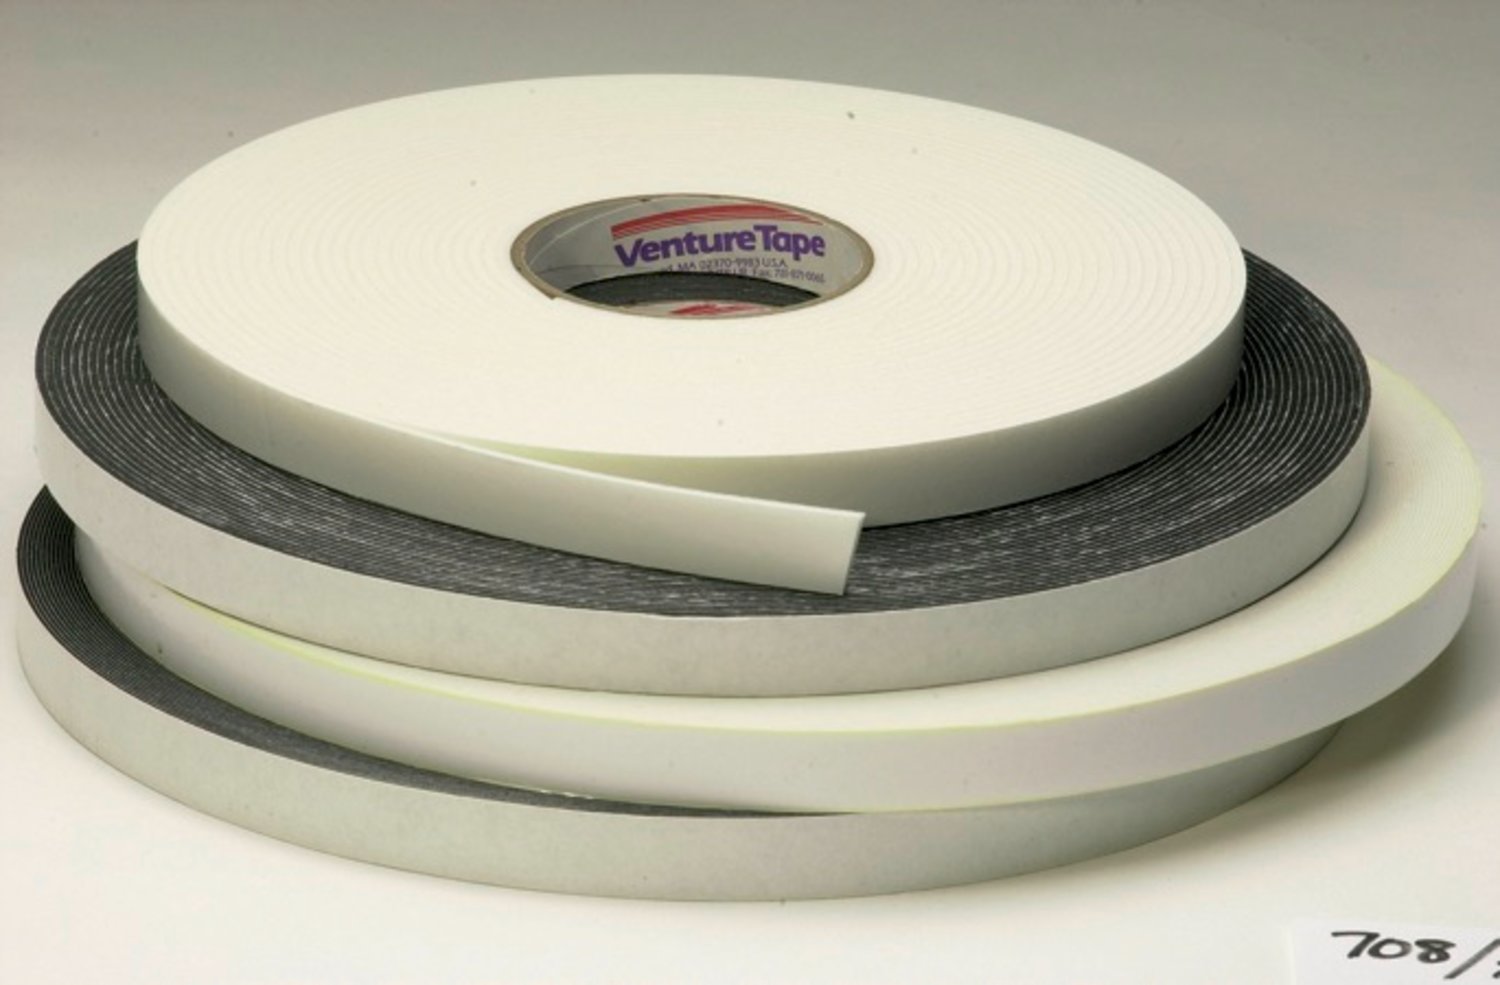 7100043862 - 3M Venture Tape Double Sided Polyethylene Foam Glazing Tape VG716,
Black, 3/8 in x 150 ft, 62 mil, 53 rolls per case